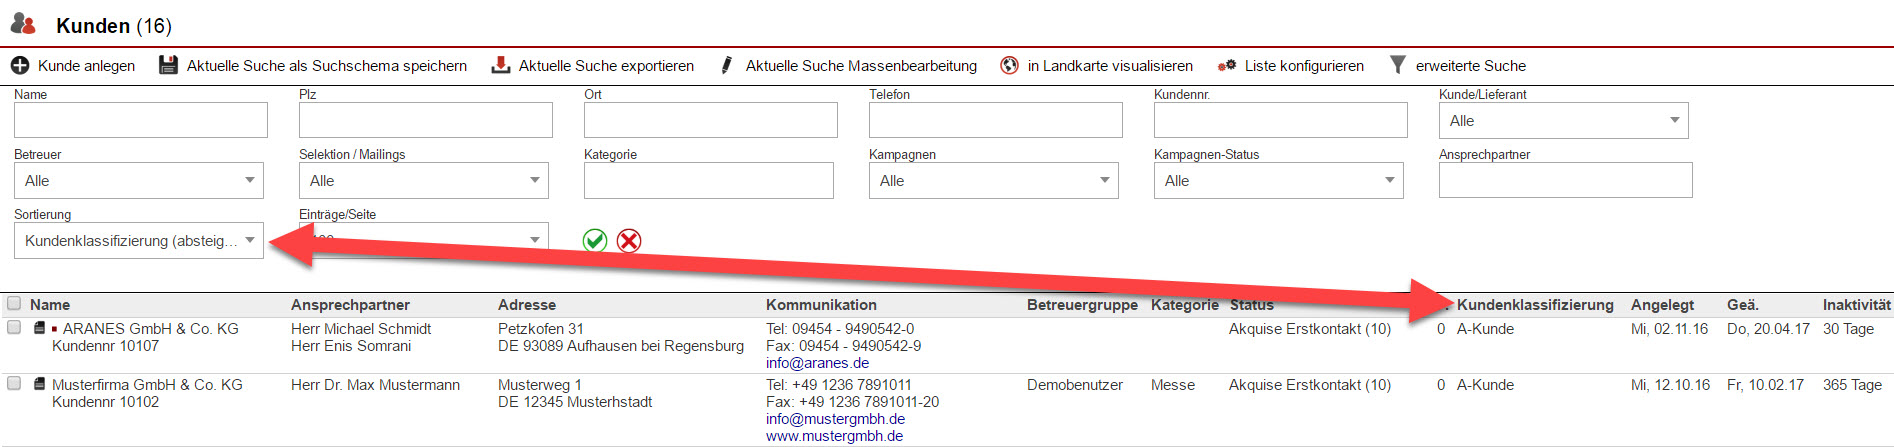 Screenshot Kundensuchmaske mit Markierung eines Sortierungskriteriums und dem aus ihm resultierenden Suchergebnisses